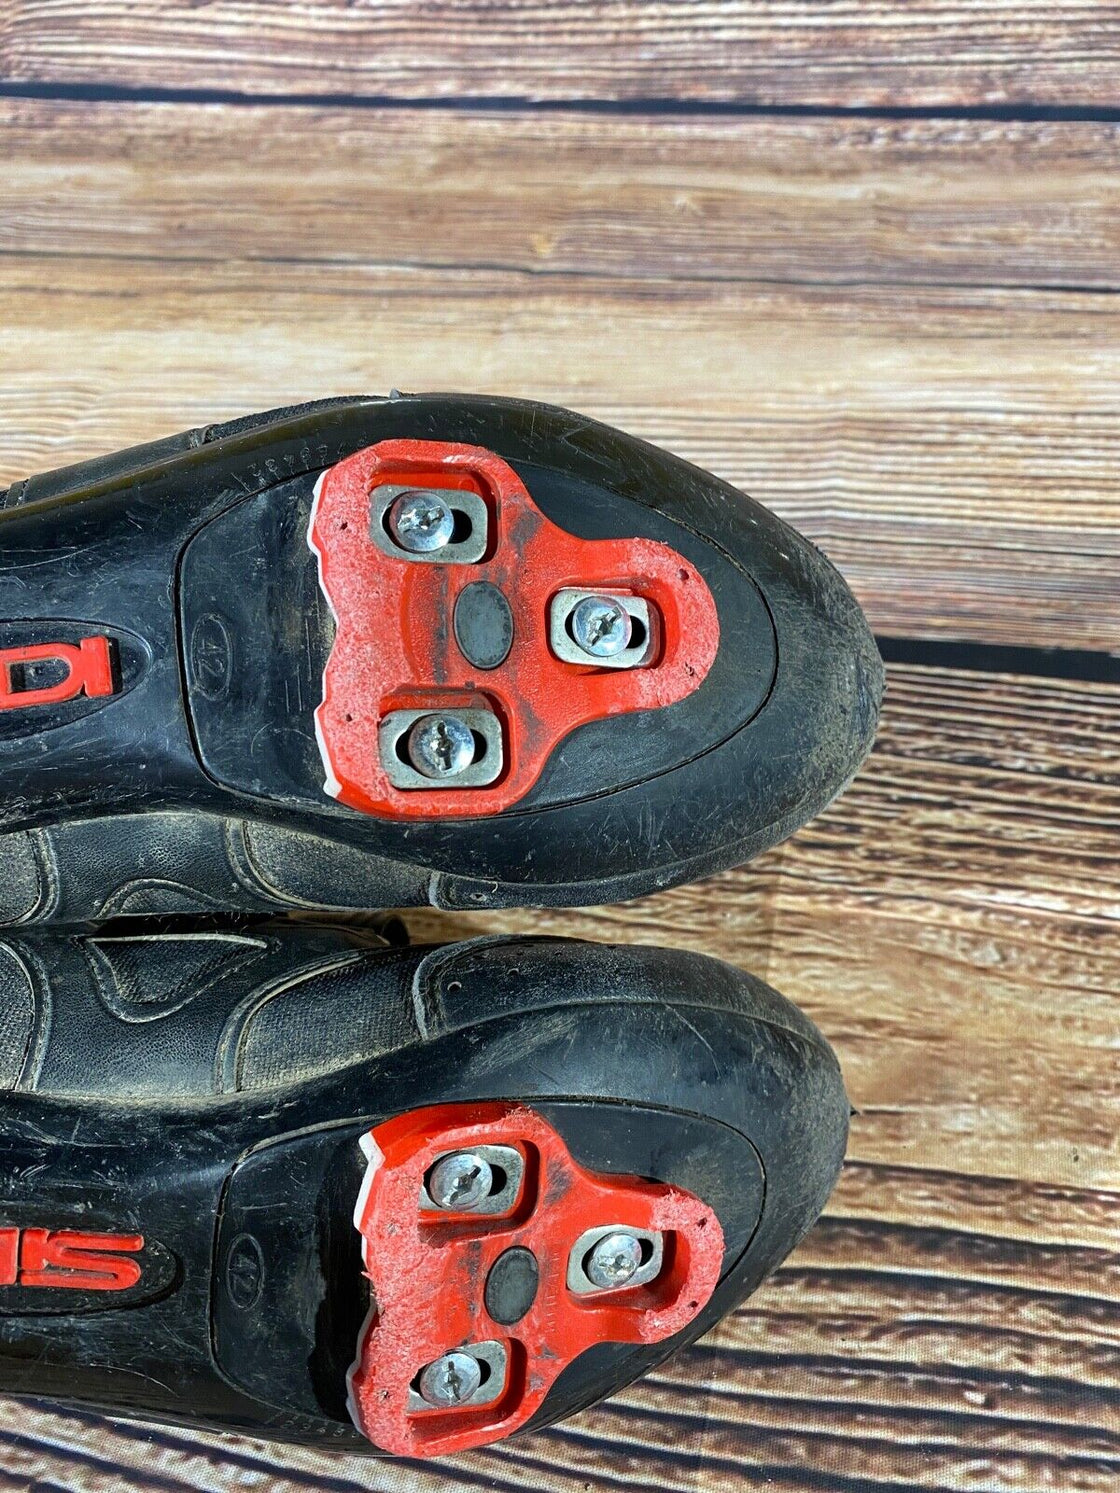 SIDI Winter GTX Road Cycling Shoes Biking Boots Shoes Size EU42 US8 Mondo 254